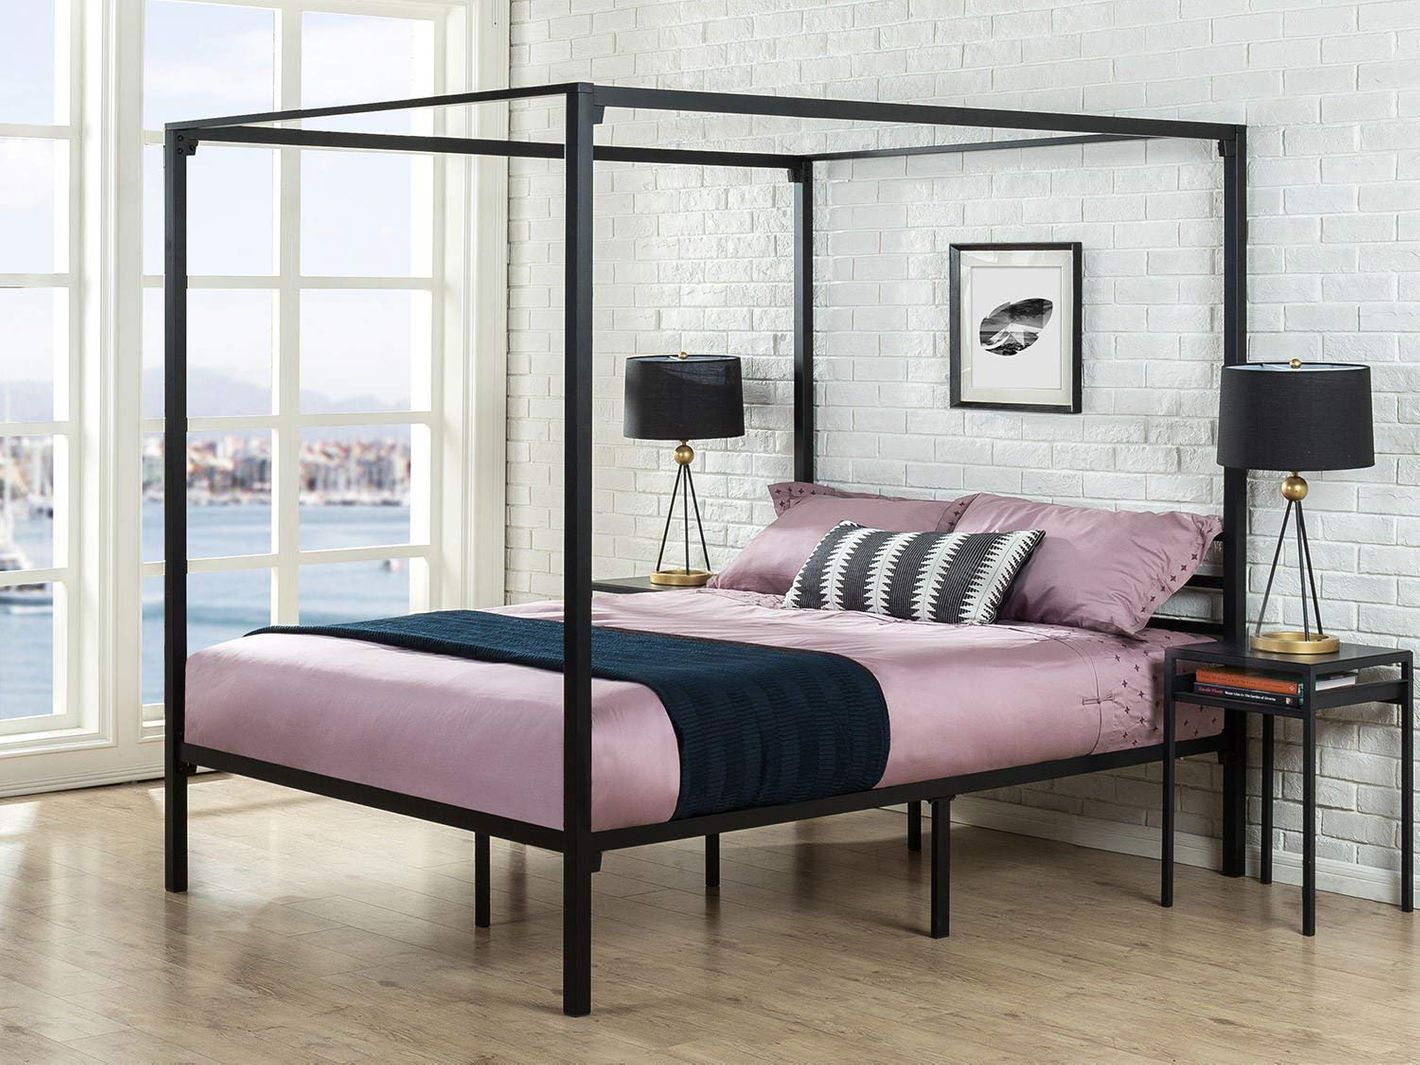 19 Best Metal Bed Frames 2020 The, High Bed Frame Full